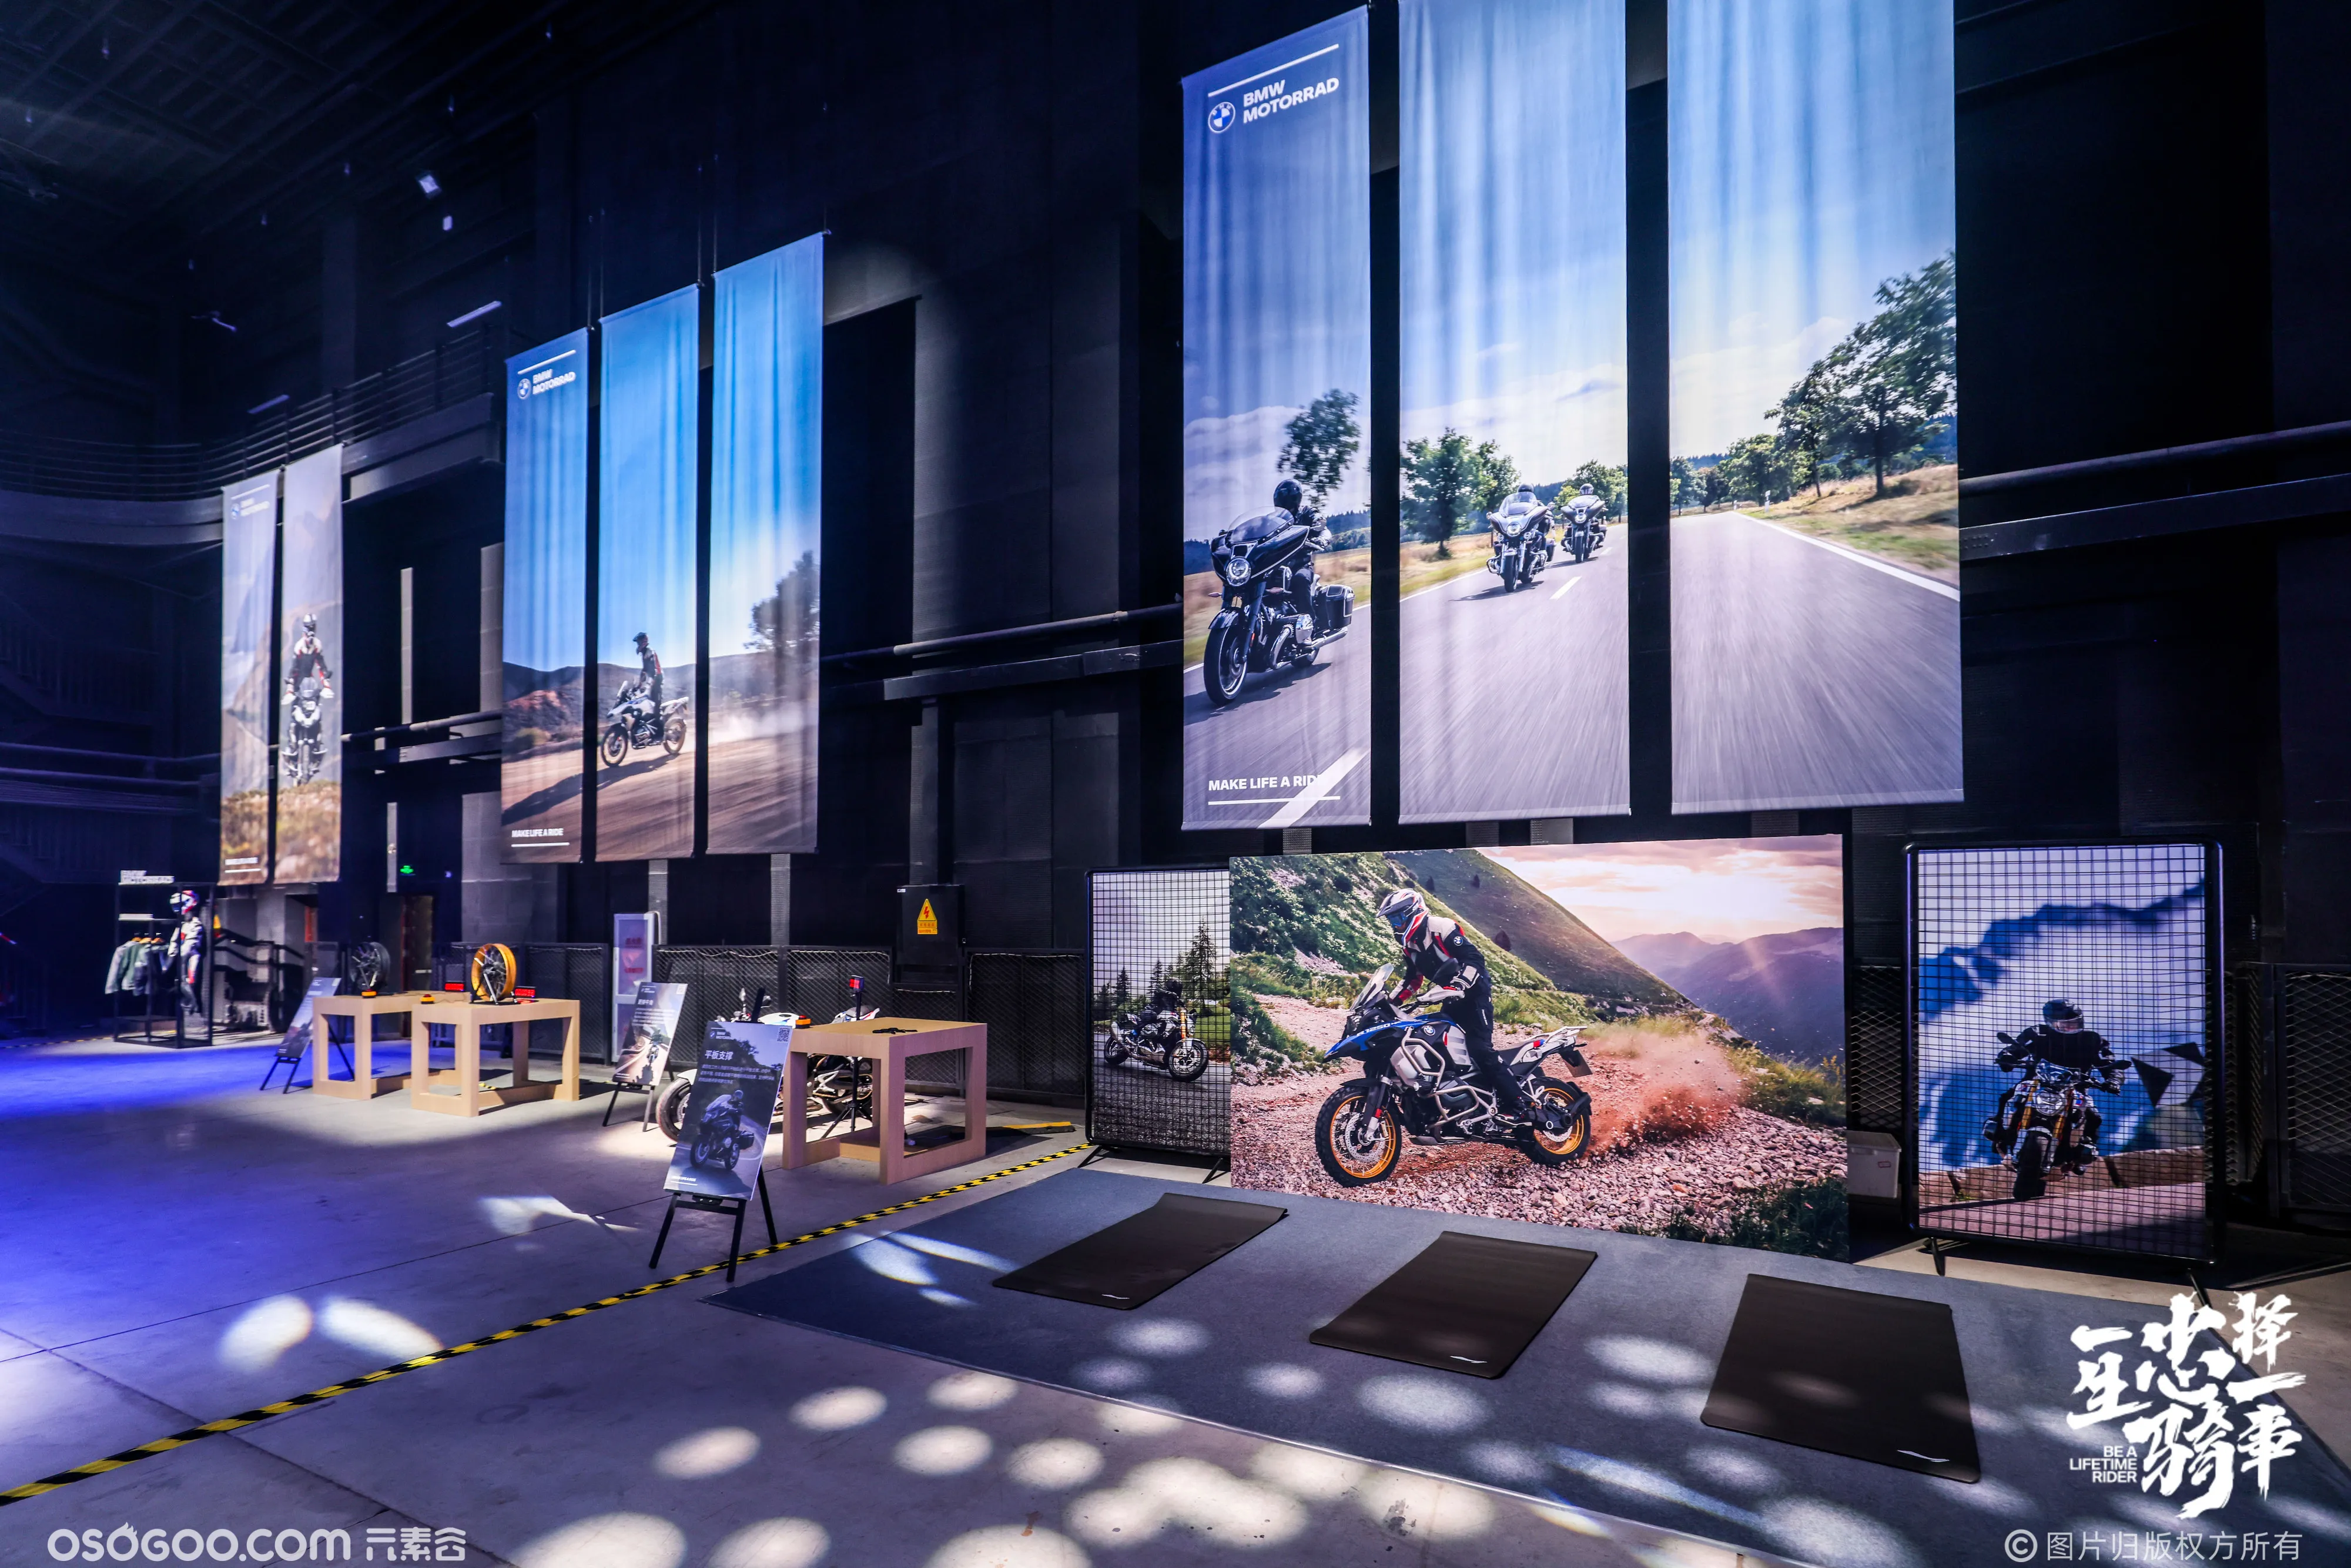 激情拉满 肆意热爱|2023 BMW 摩托车中国经销商达人赛